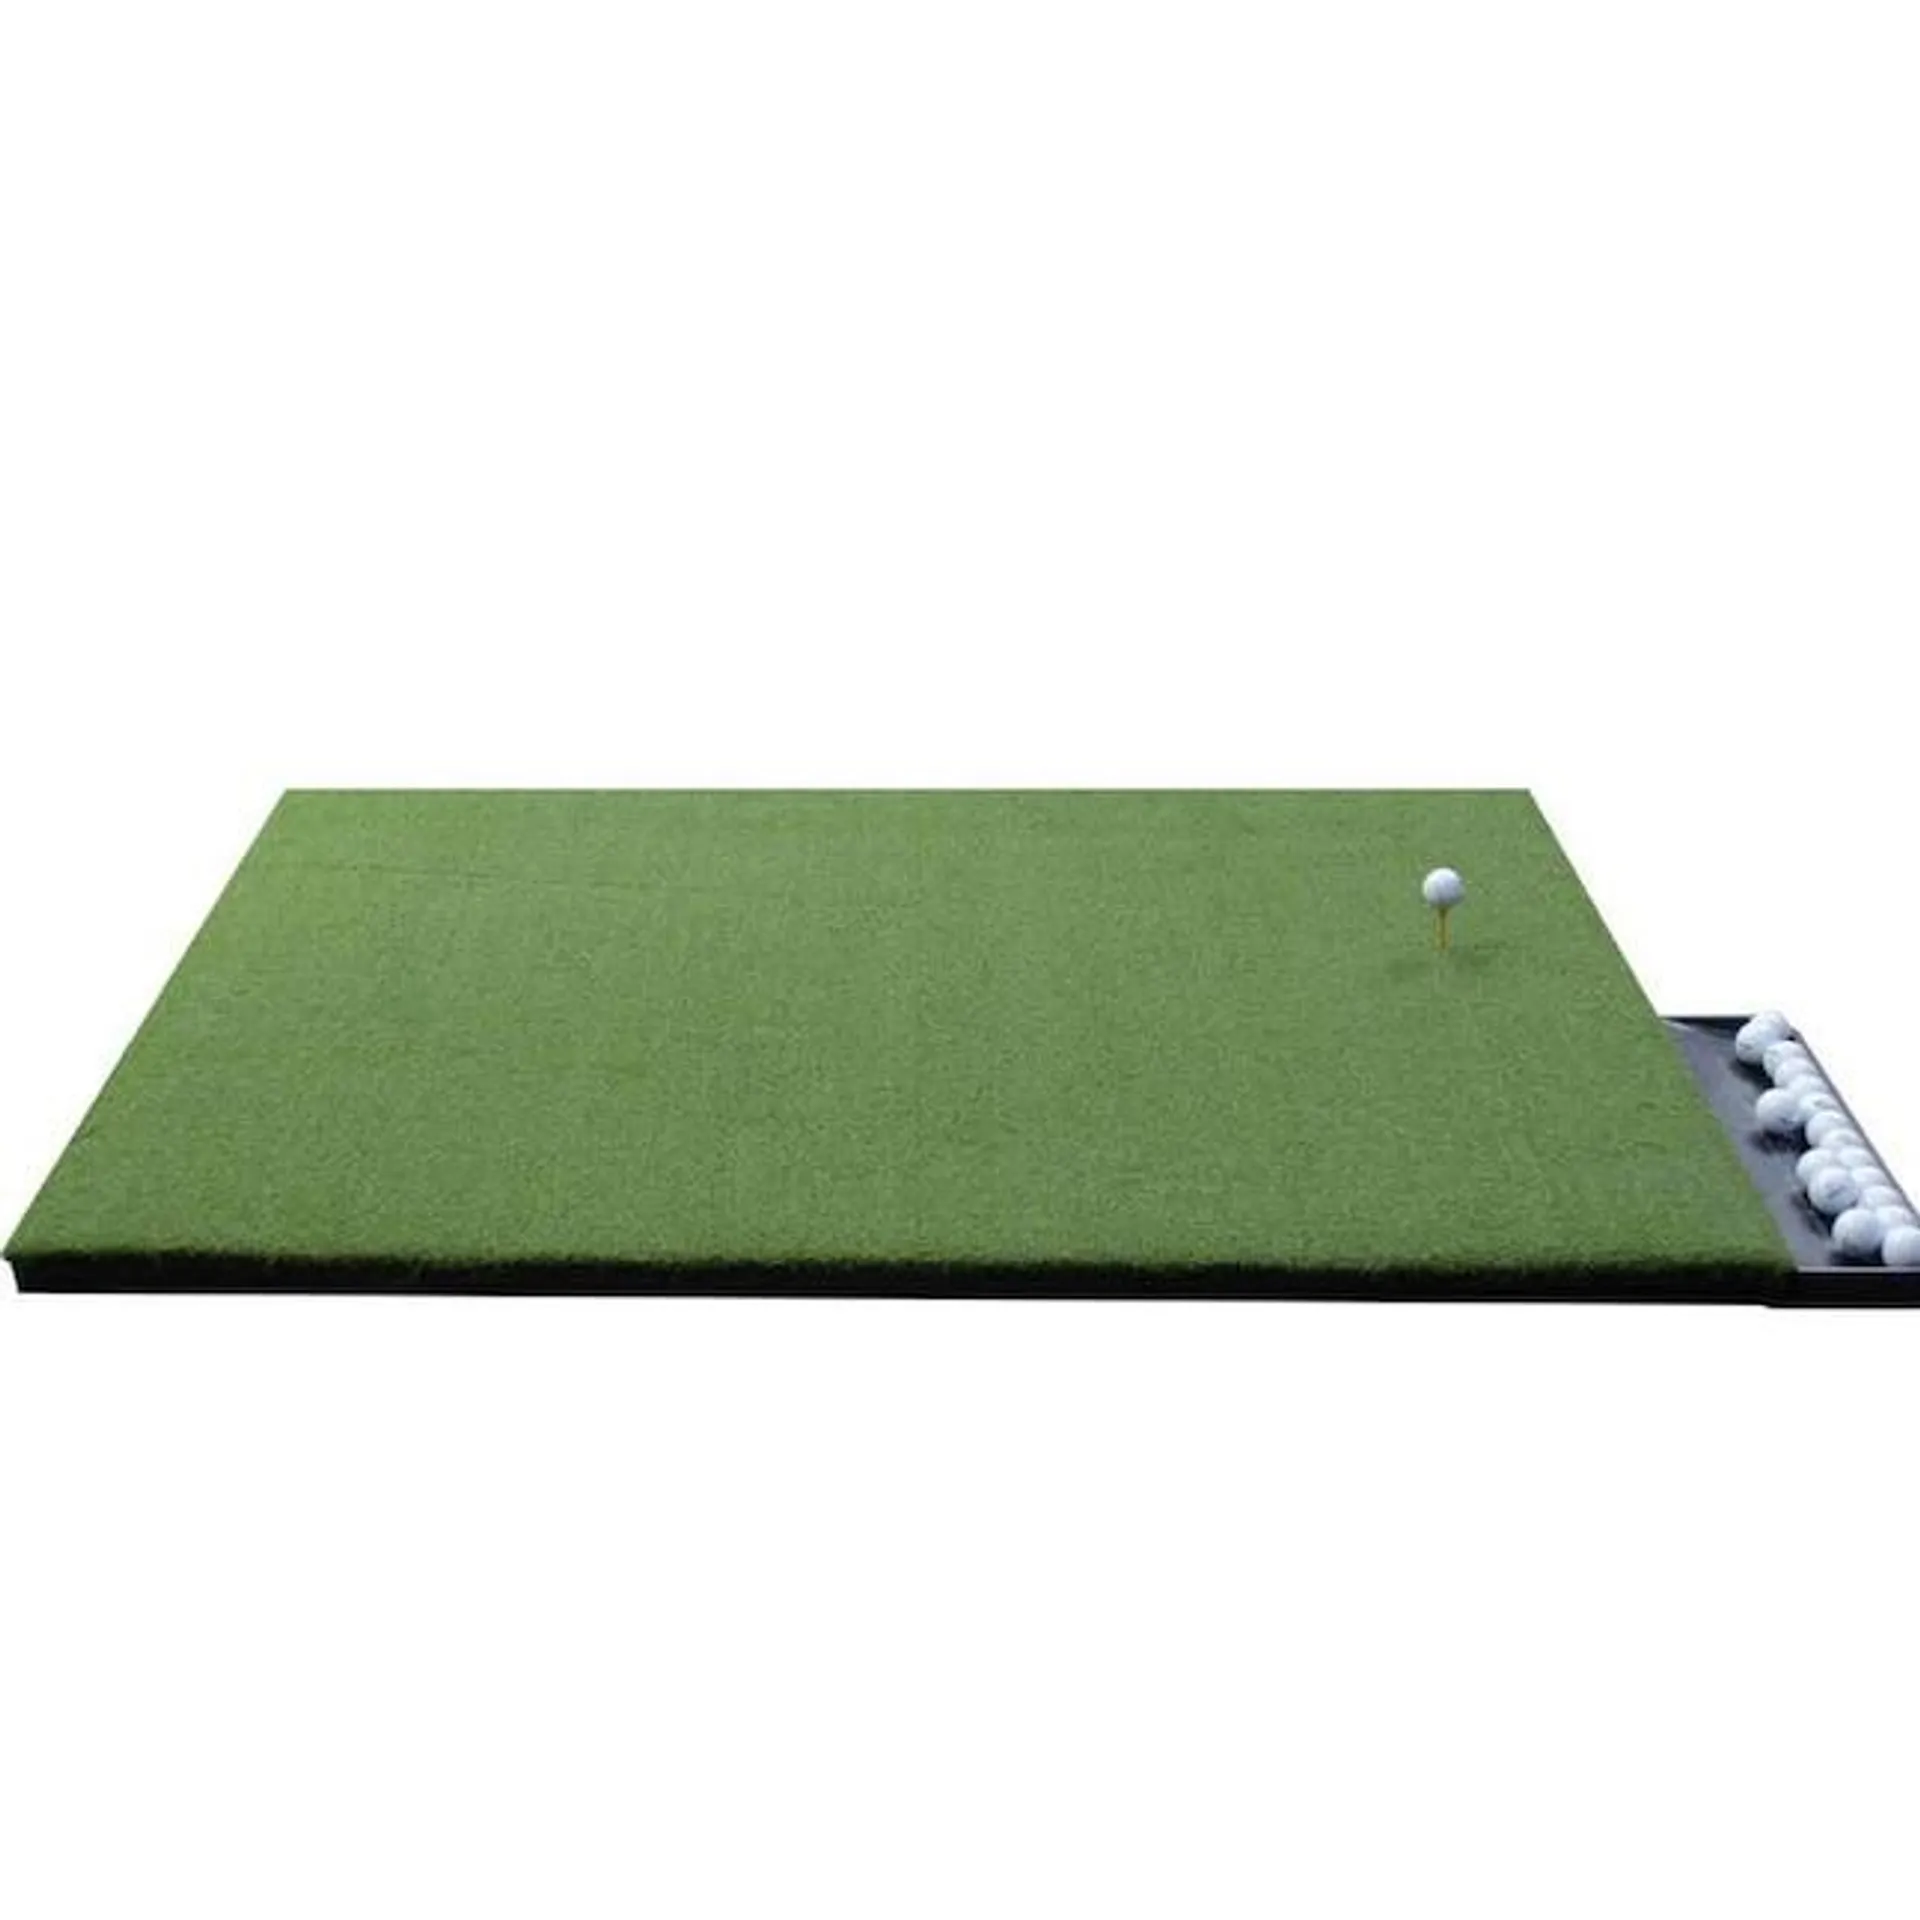 DuraPlay 5-ft x 5-ft Indoor or Outdoor Artificial Grass